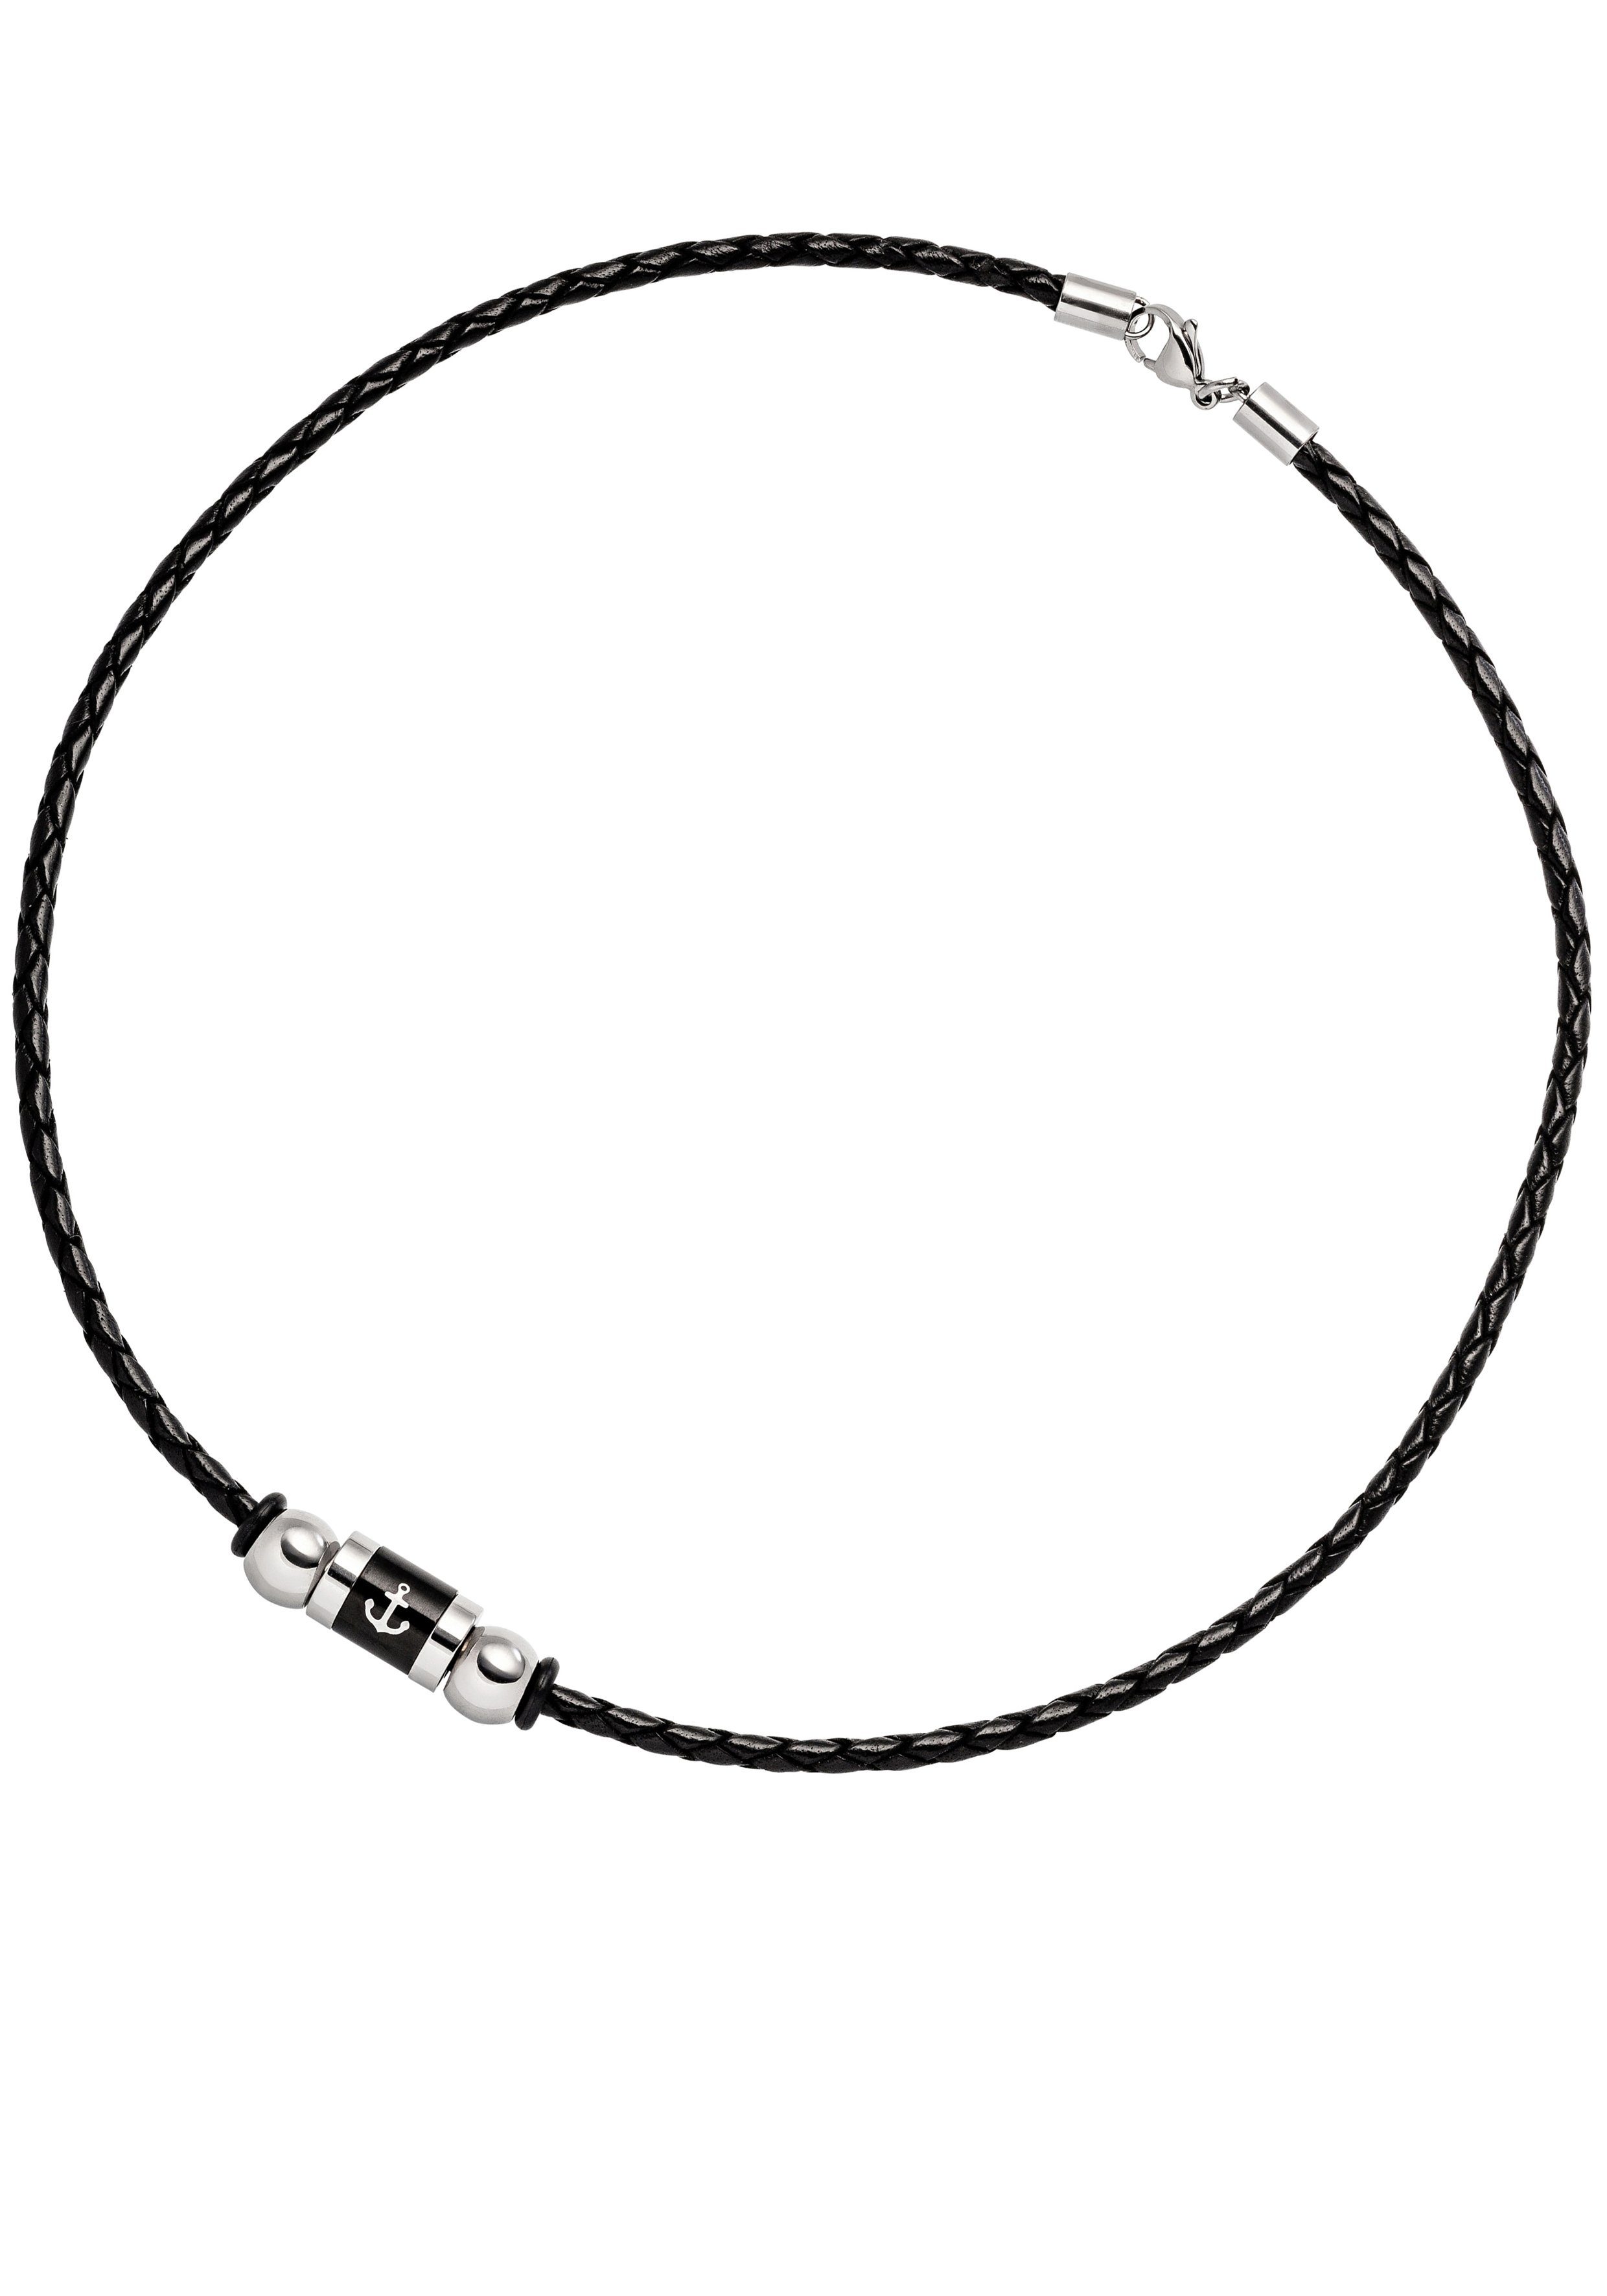 JOBO Lederband Motiv Anker, Leder und Edelstahl schwarz beschichtet 45 cm | Edelstahlarmbänder